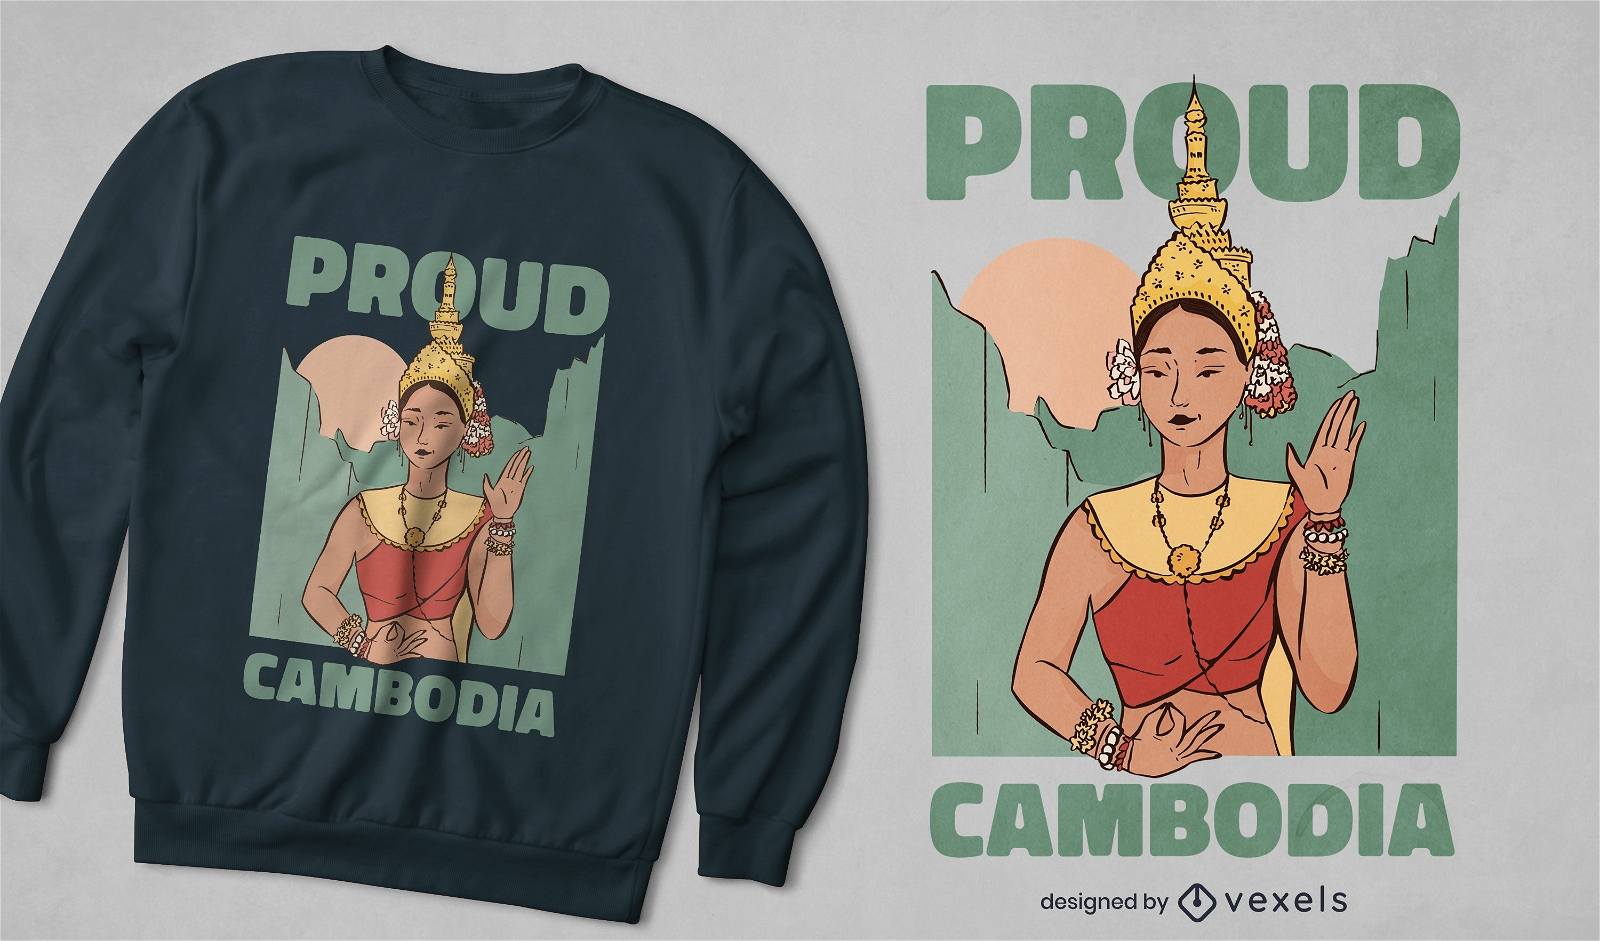 Dise?o tradicional de camiseta de ni?a camboyana.